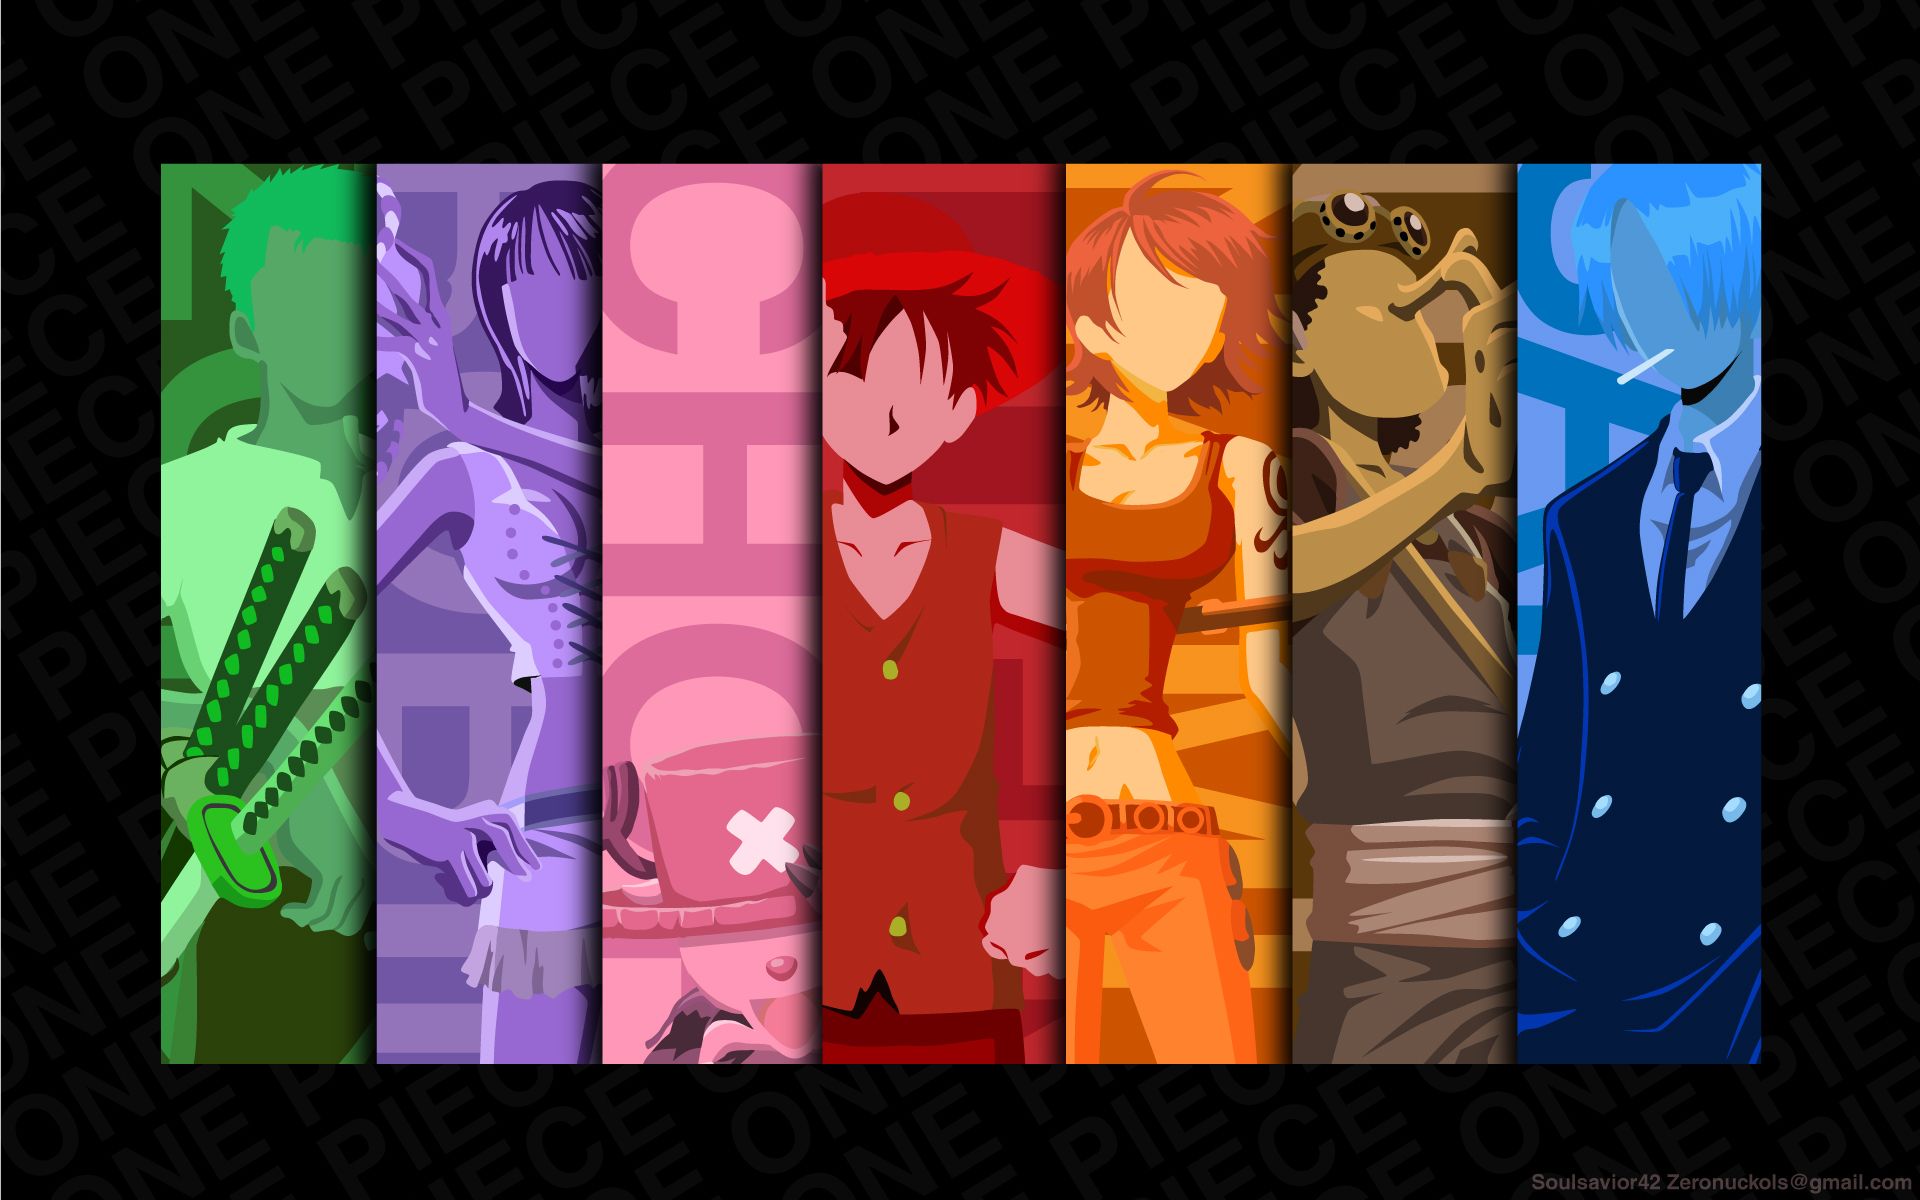 Free download wallpaper Anime, One Piece, Tony Tony Chopper, Usopp (One Piece), Roronoa Zoro, Monkey D Luffy, Nami (One Piece), Sanji (One Piece), Nico Robin on your PC desktop